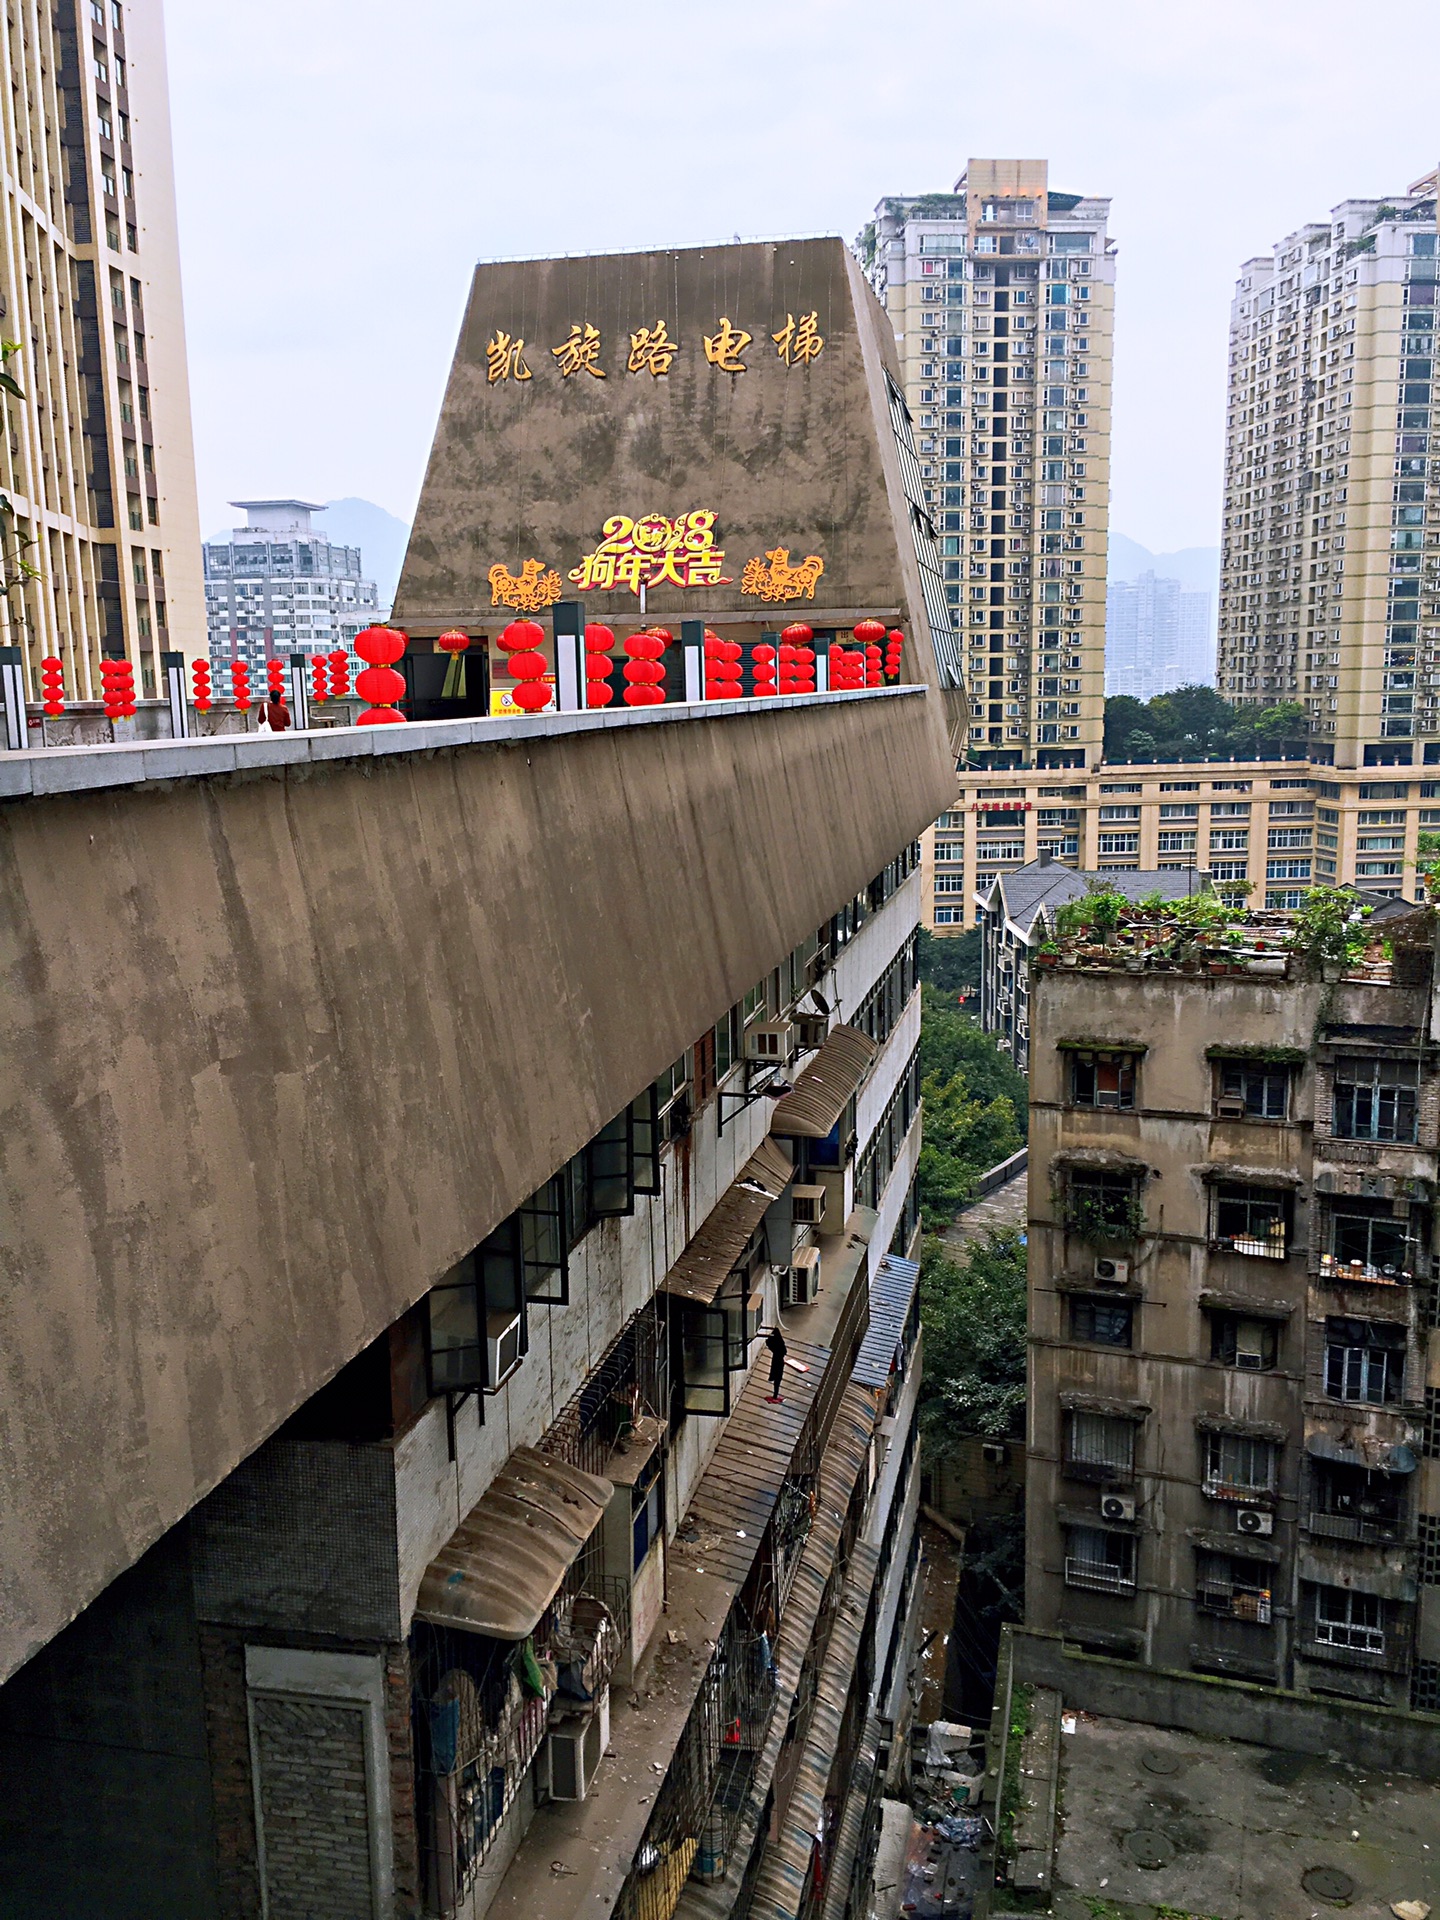 重庆魔幻3d代表之凯旋路电梯及任性天桥—霞姐印象重庆之凯旋路电梯